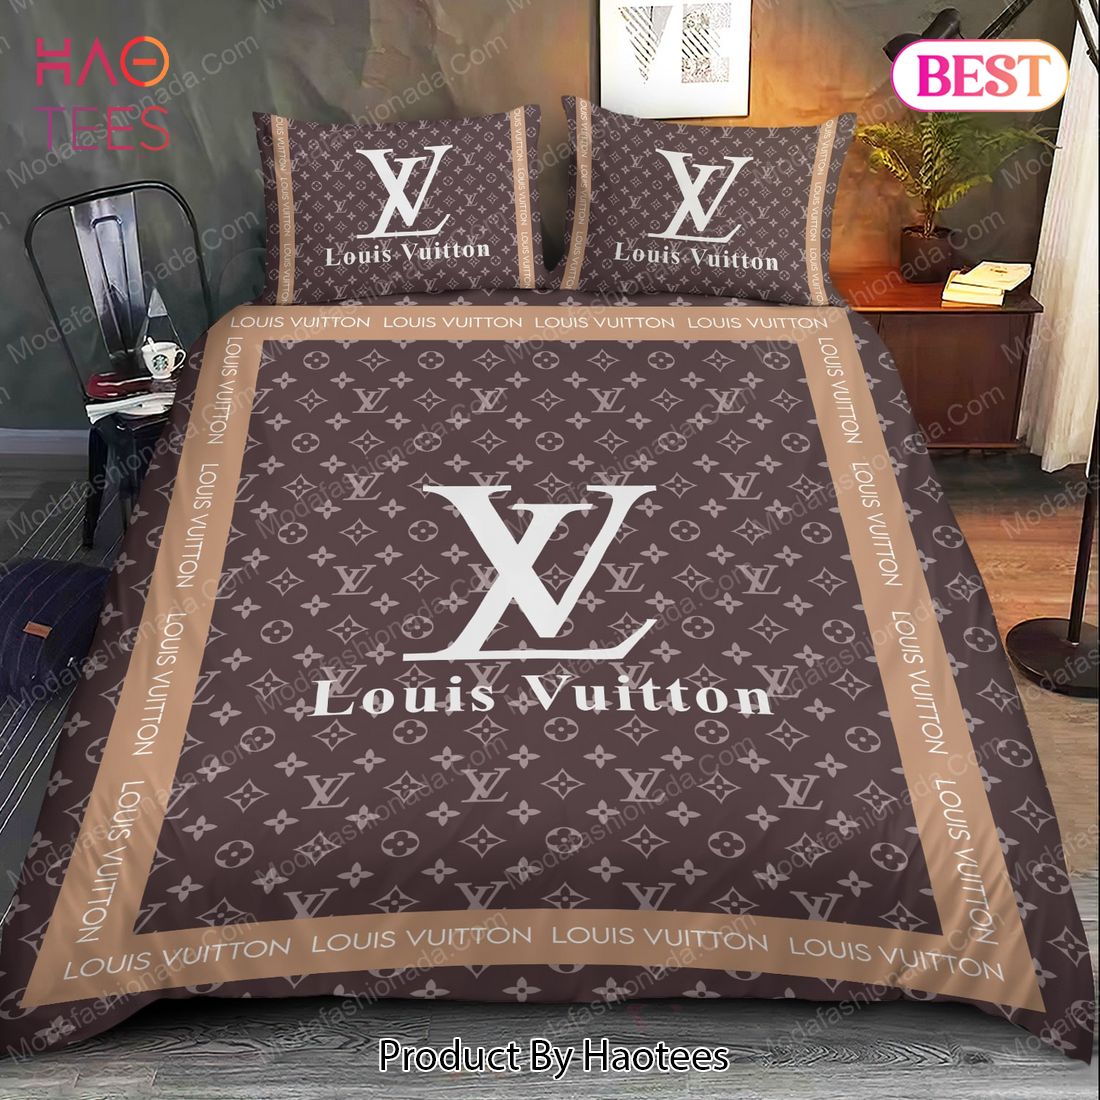 Buy Louis Vuitton Luxury Brands 25 Bedding Set Bed Sets, Bedroom